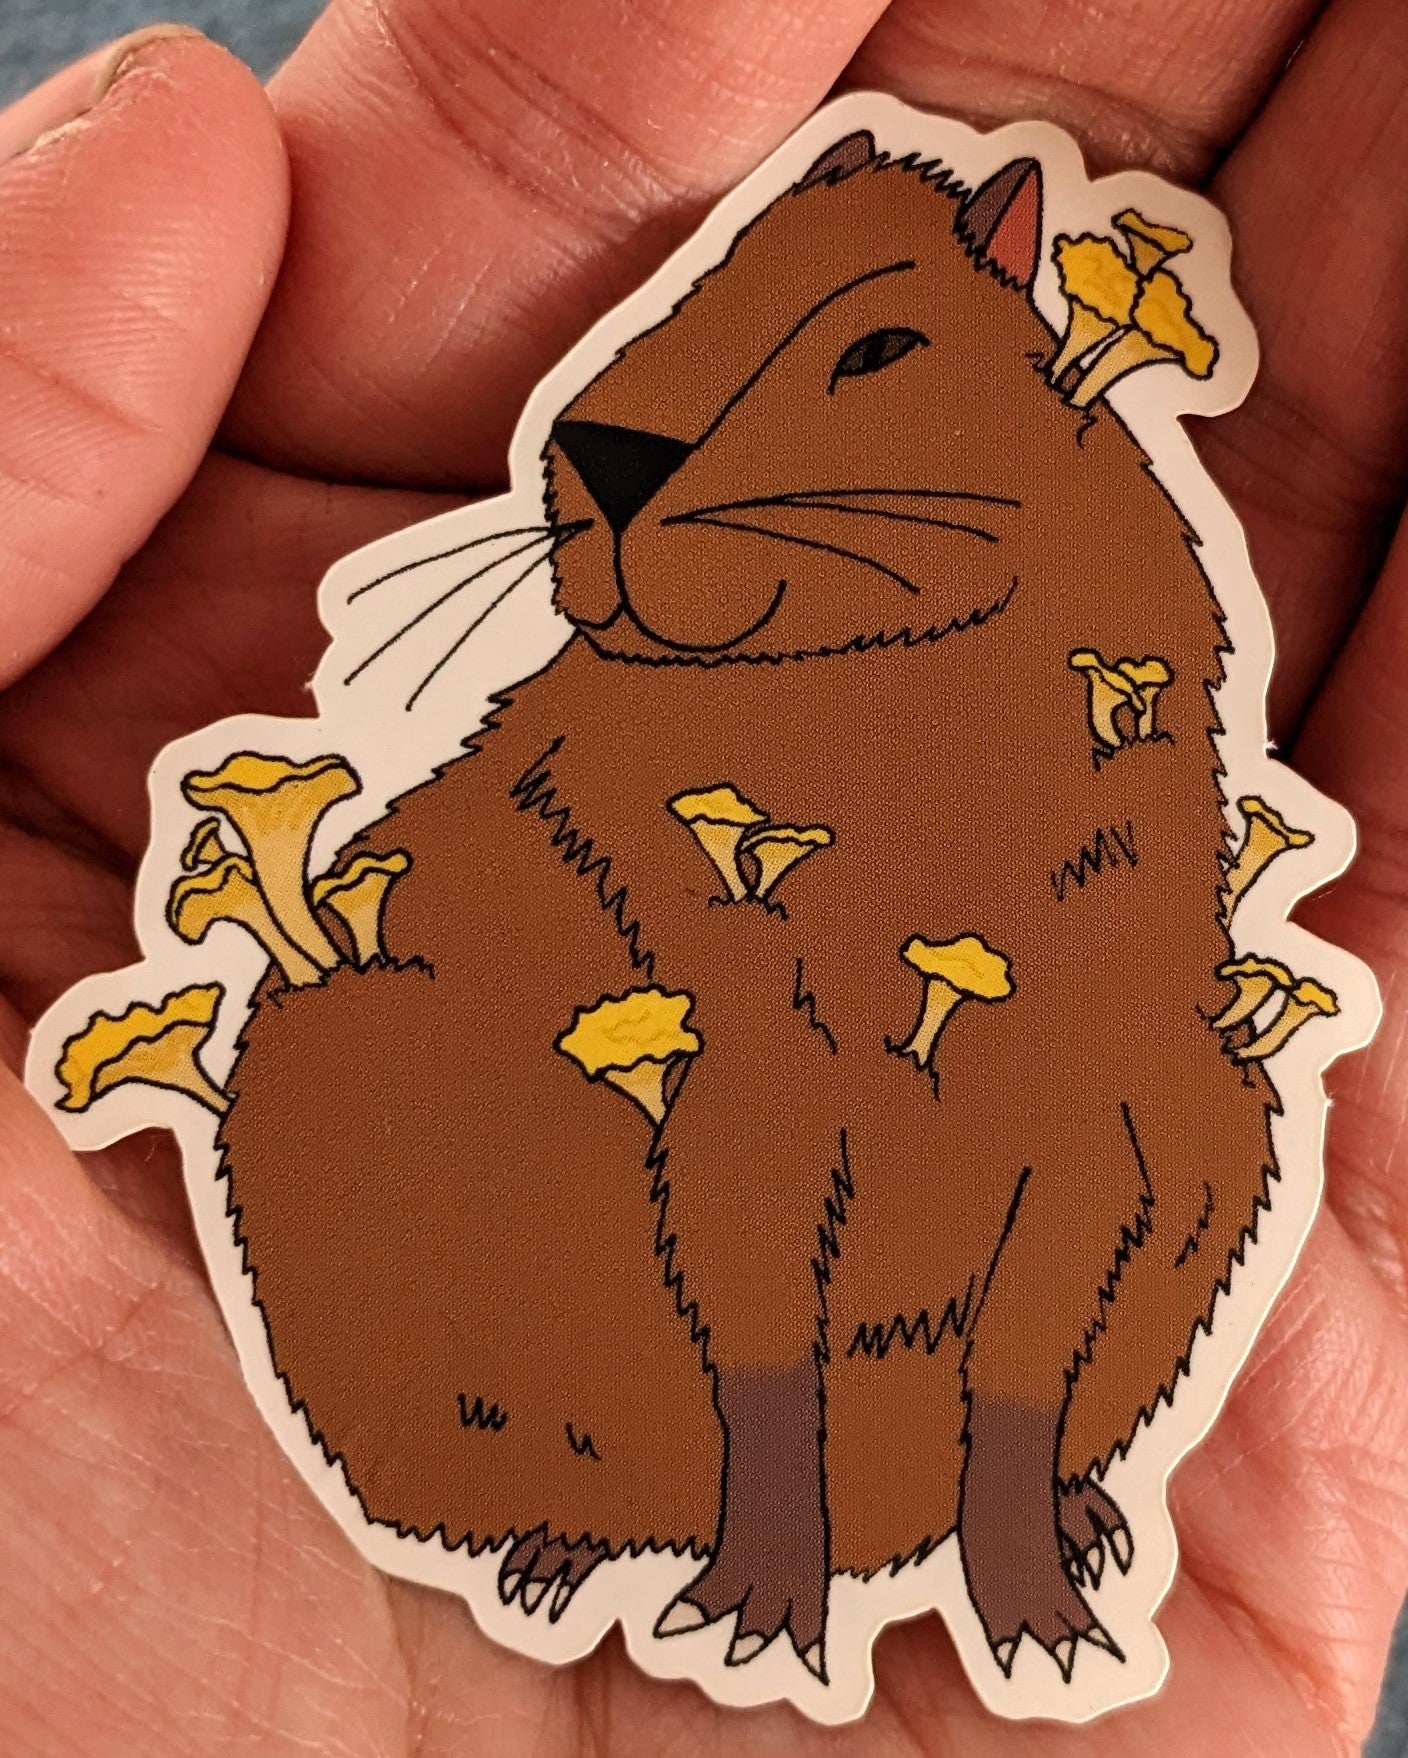 Chanterelle Capybara Die Cut Vinyl Sticker